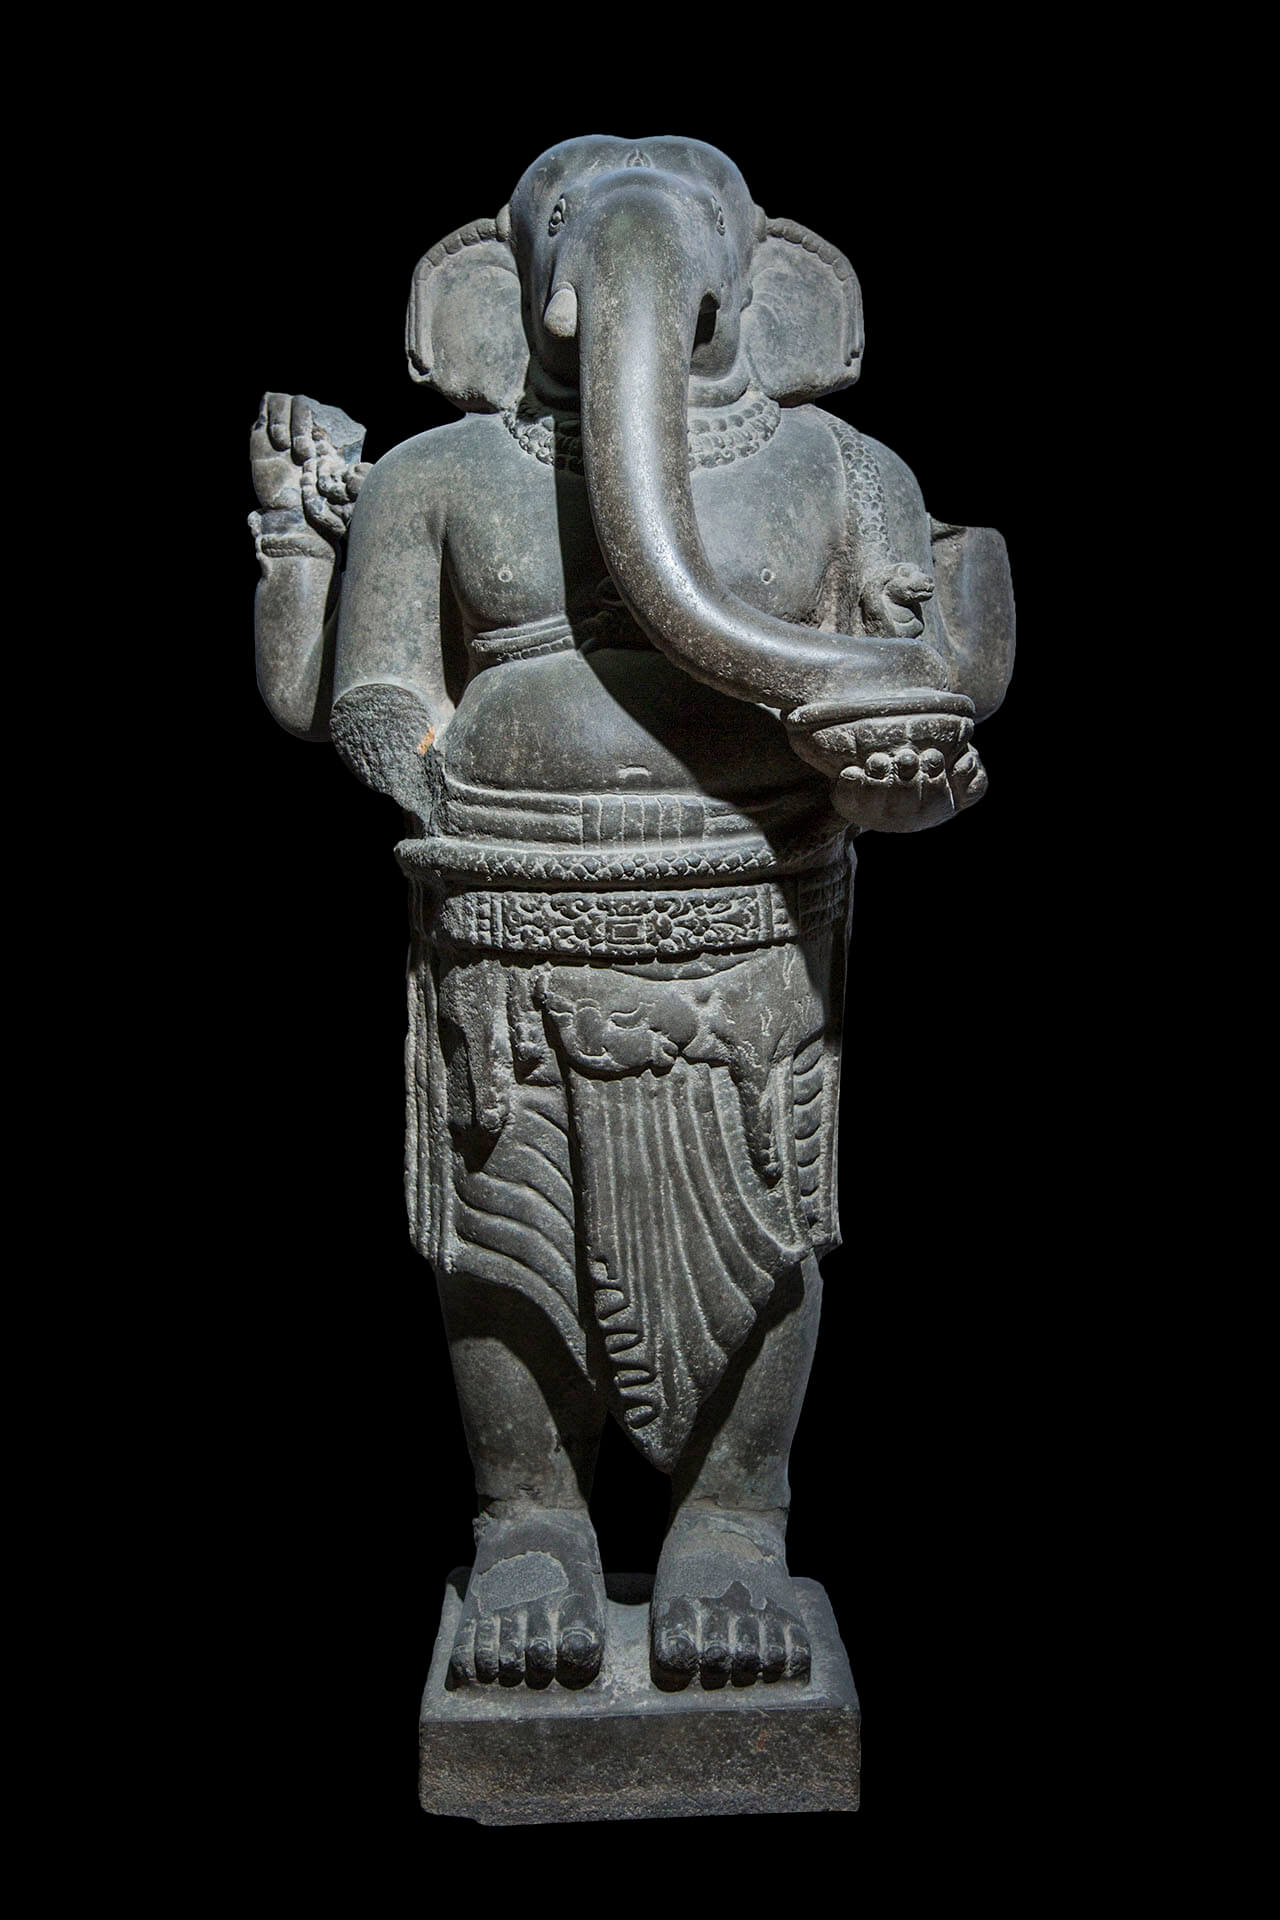 Tượng Ganesha - theo thần thoại Ấn Độ là vị thần may mắn, tri thức và văn học